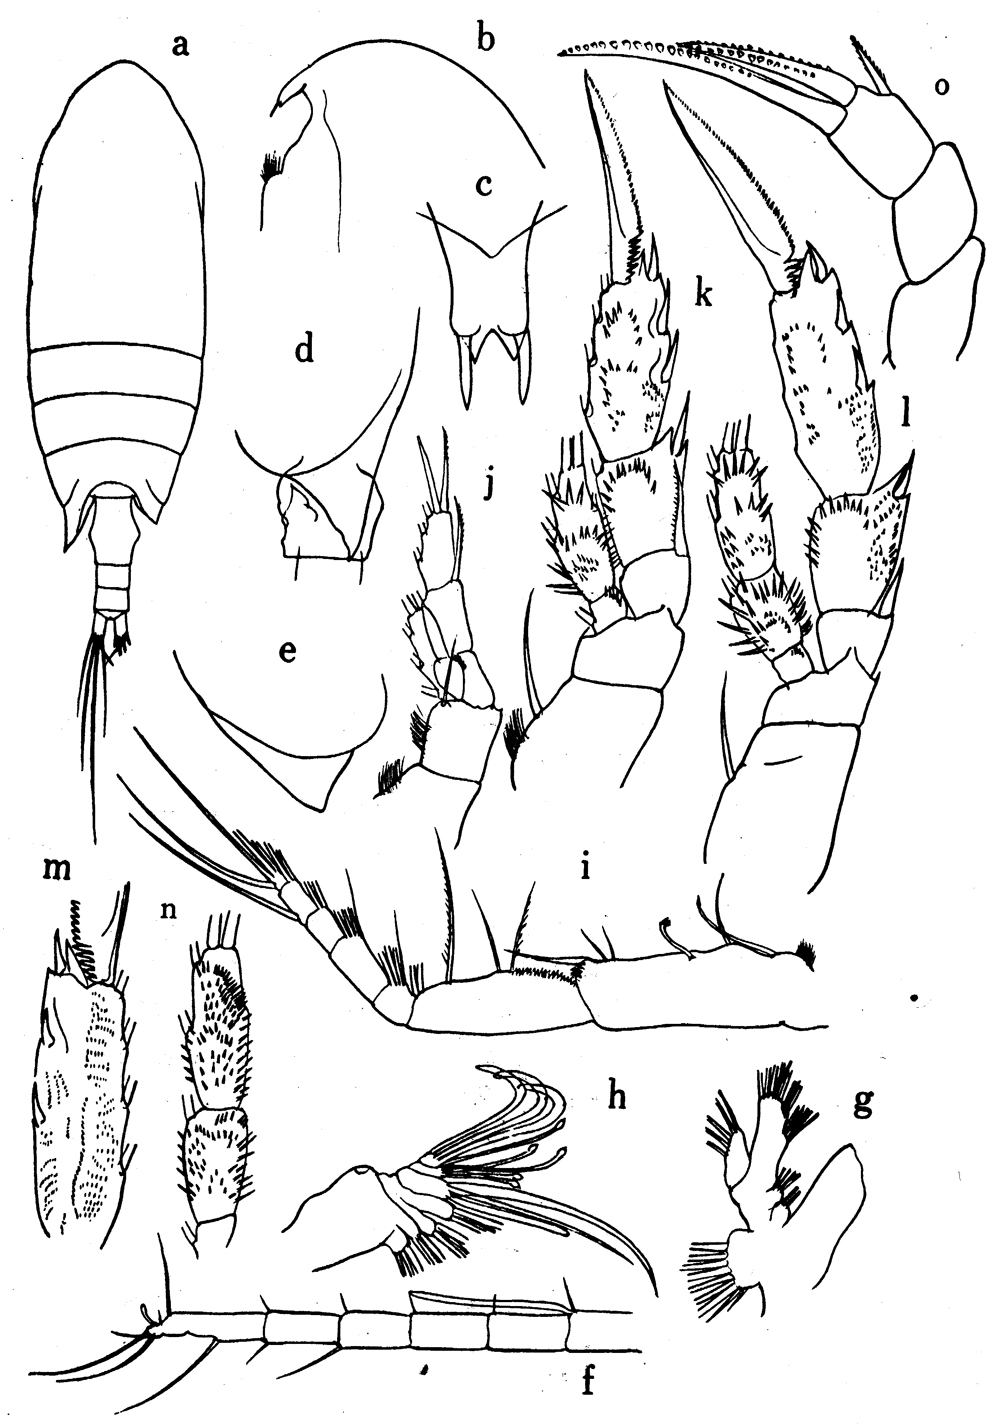 Espèce Undinothrix spinosa - Planche 1 de figures morphologiques